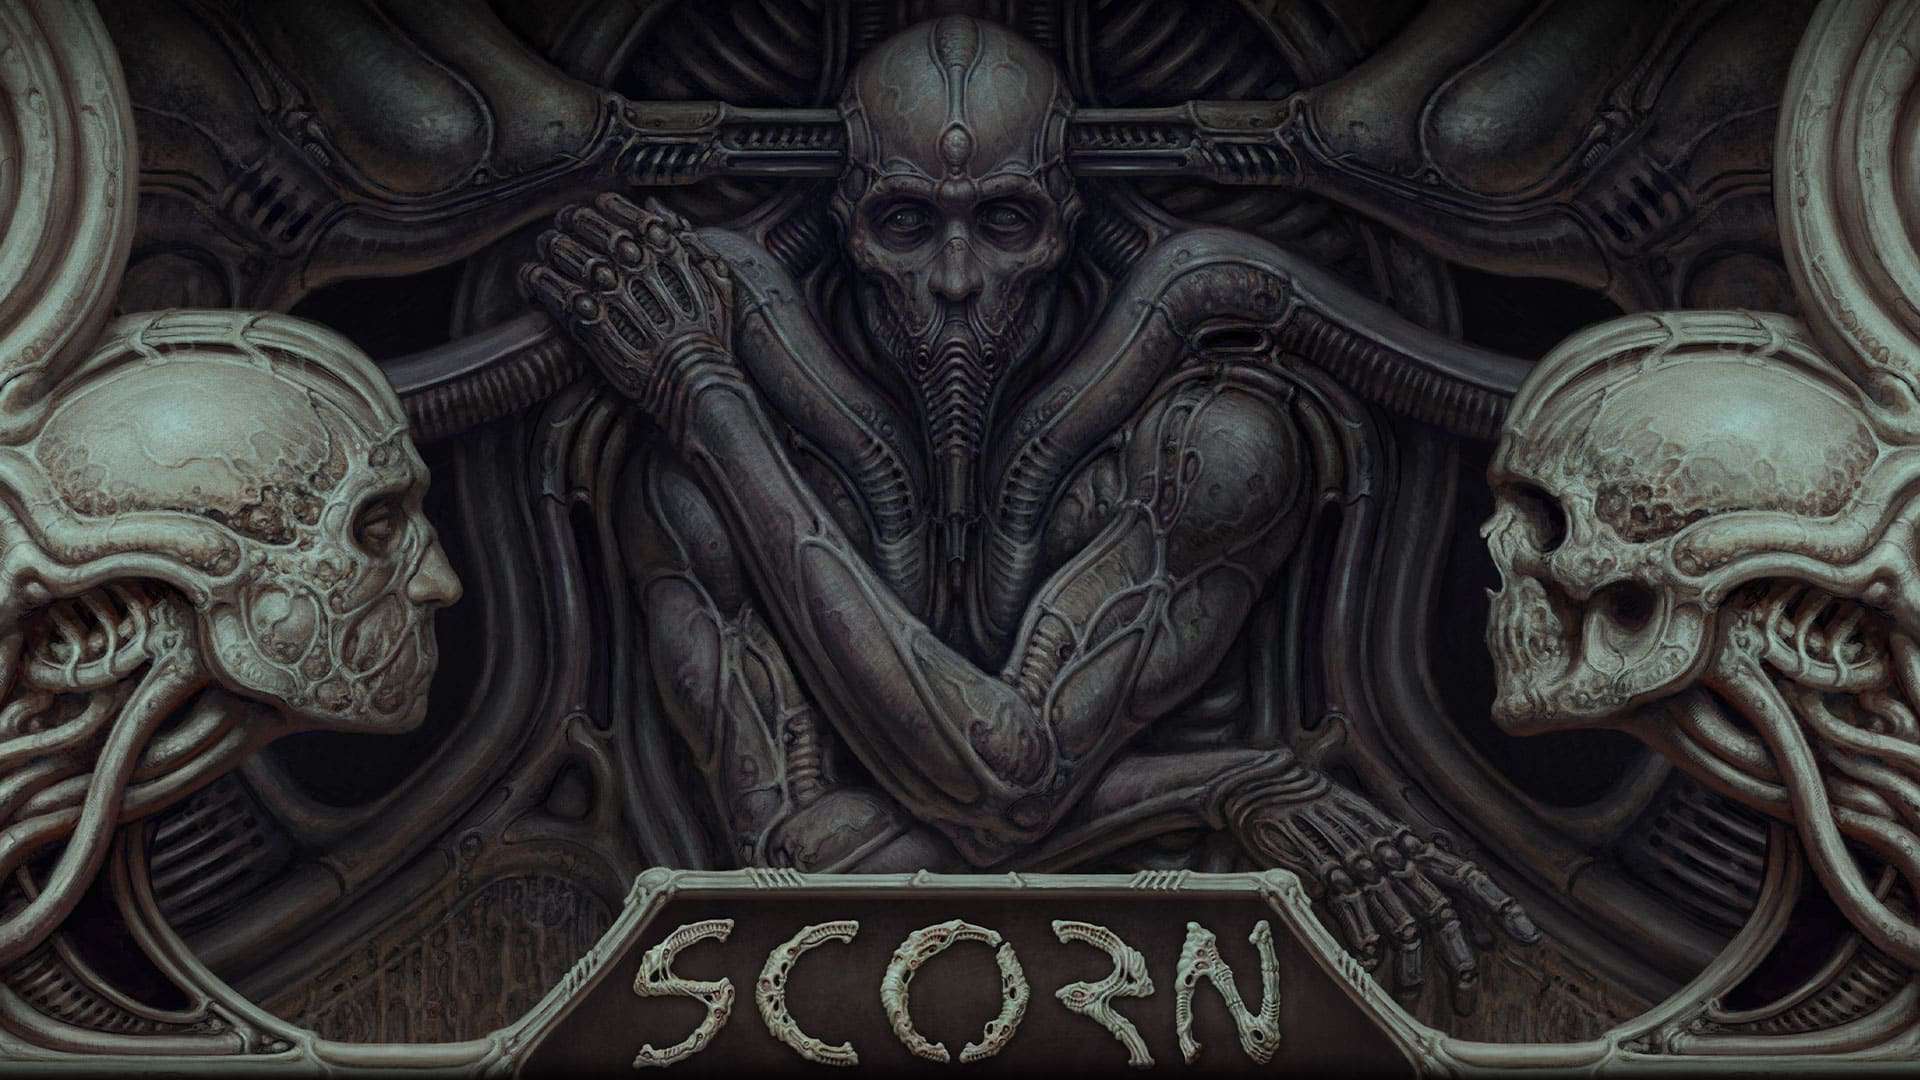 Xbox divulga gameplay do jogo de terror “Scorn”